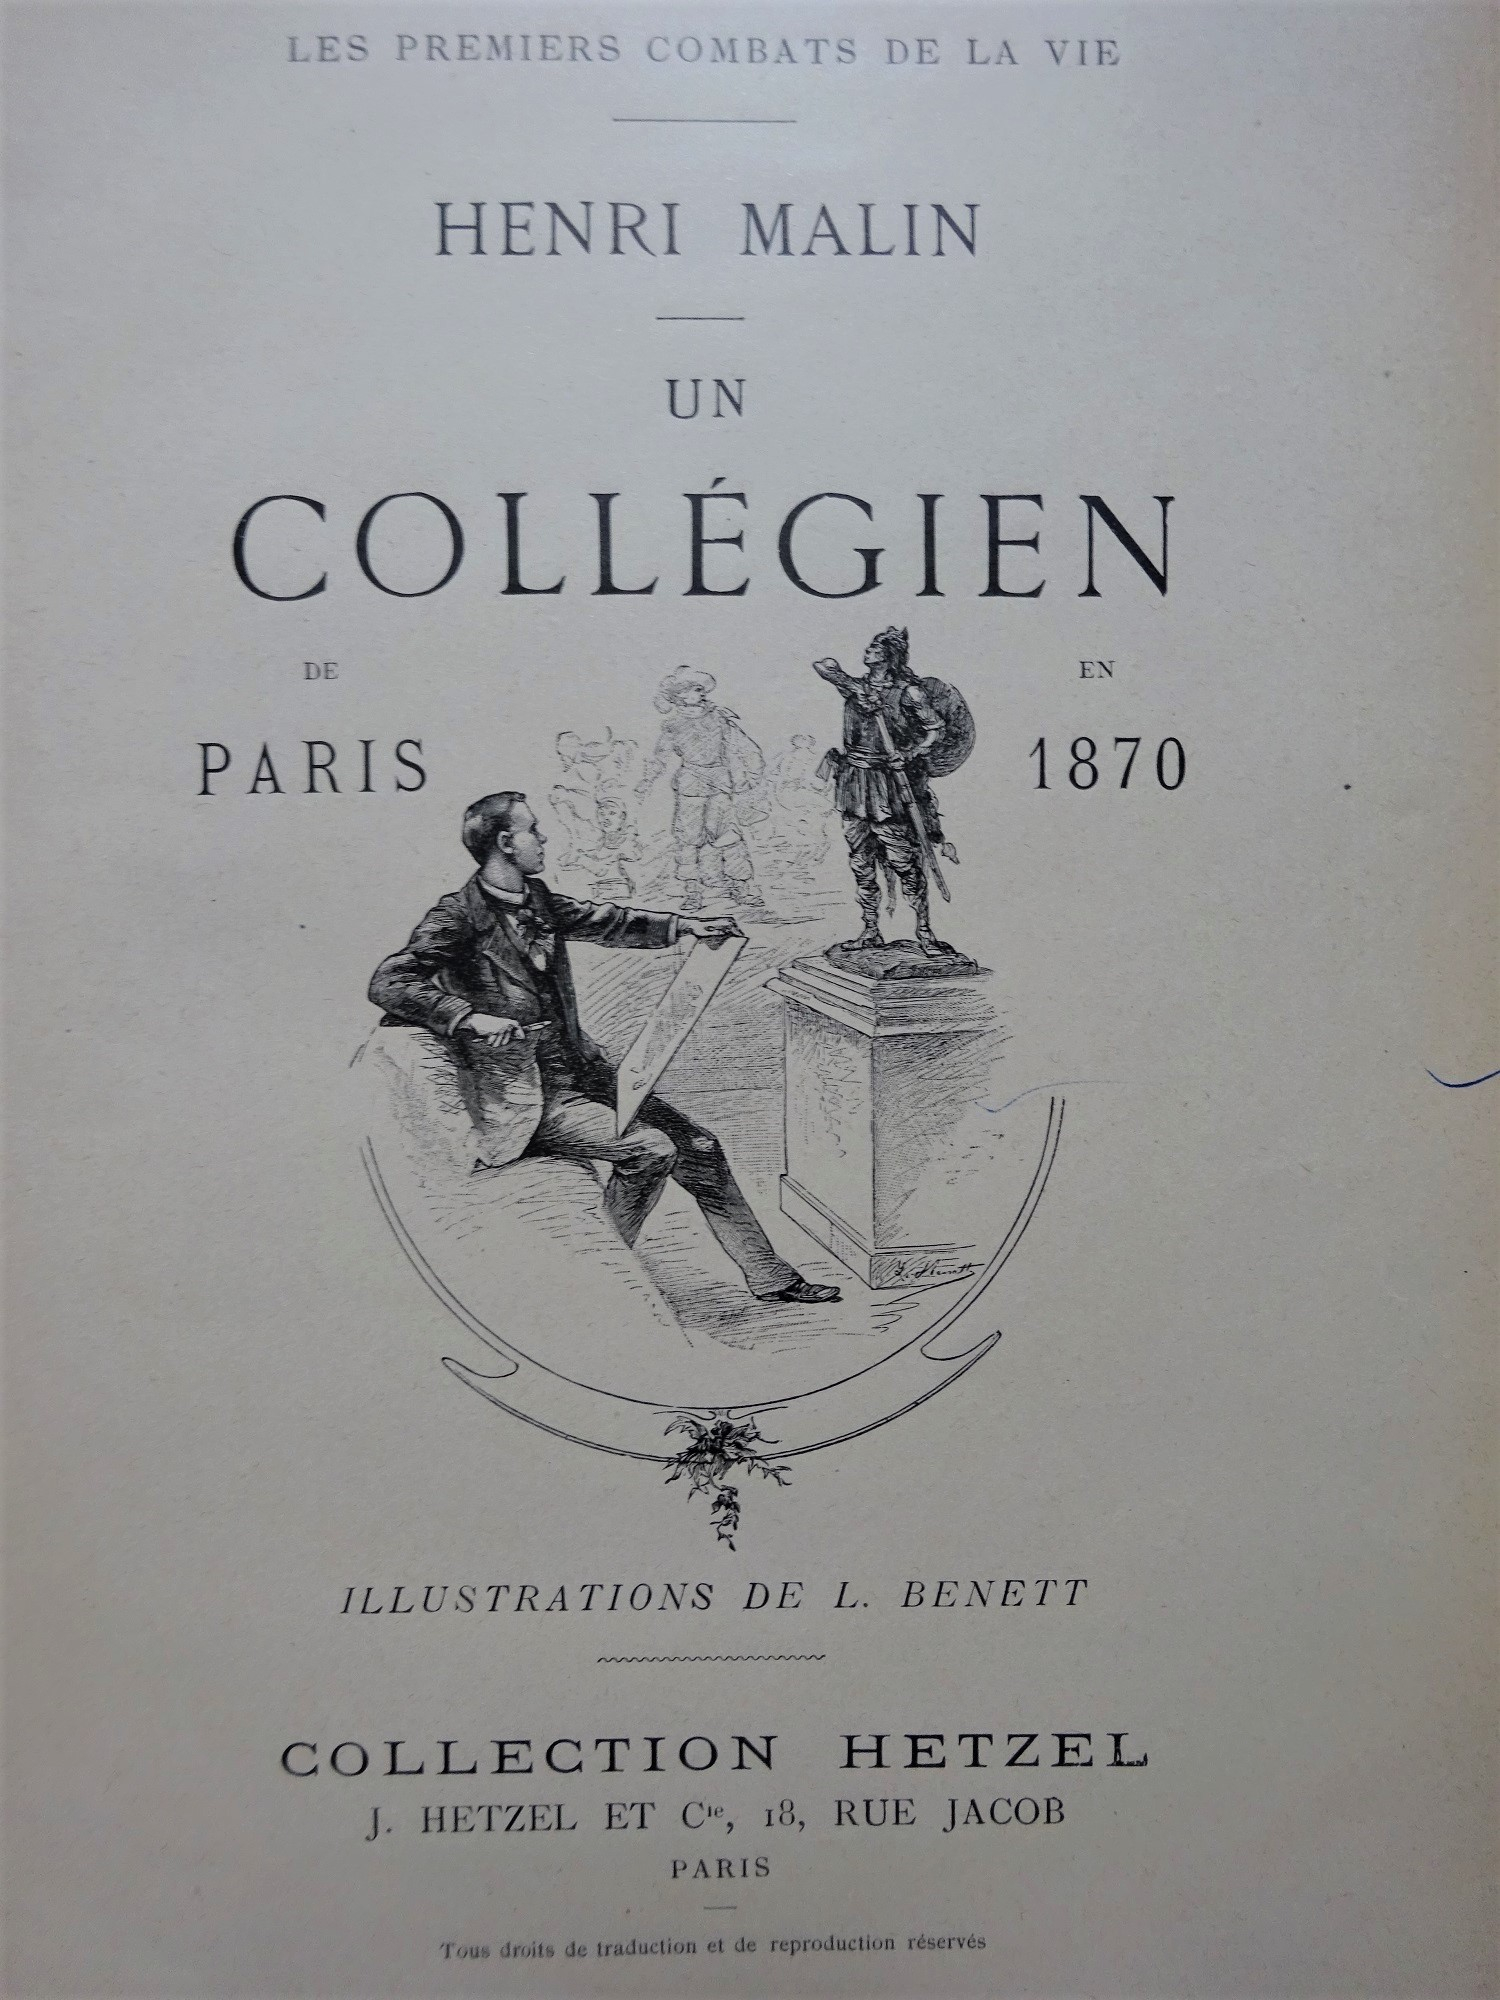 Un collégien de Paris en 1870